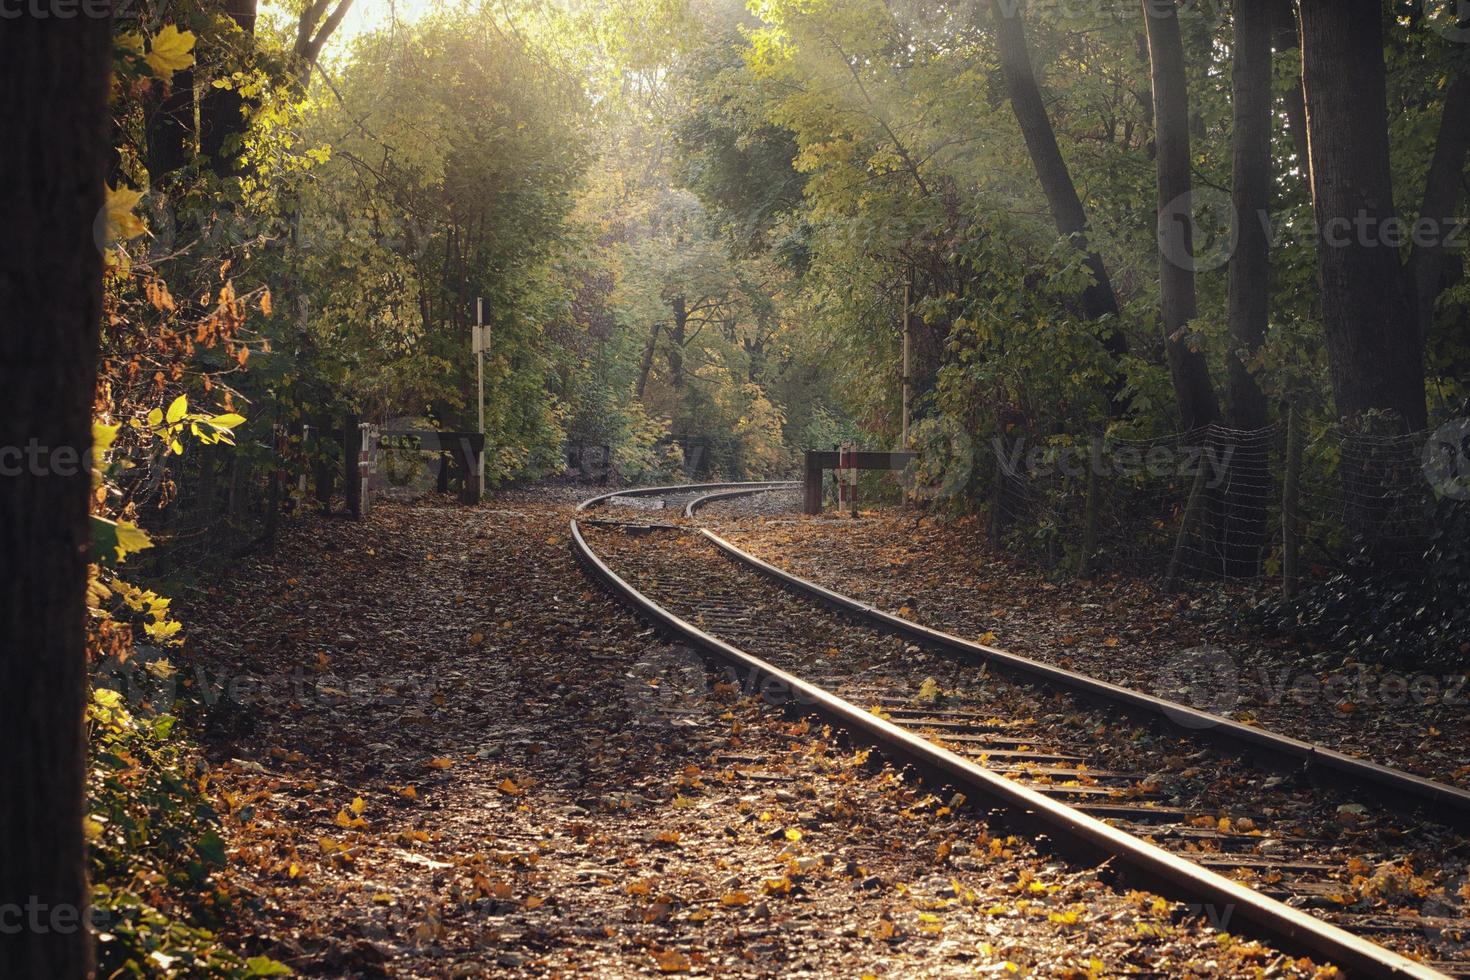 trilhos de trem através de um bosque em clima de outono e incidência de luz foto